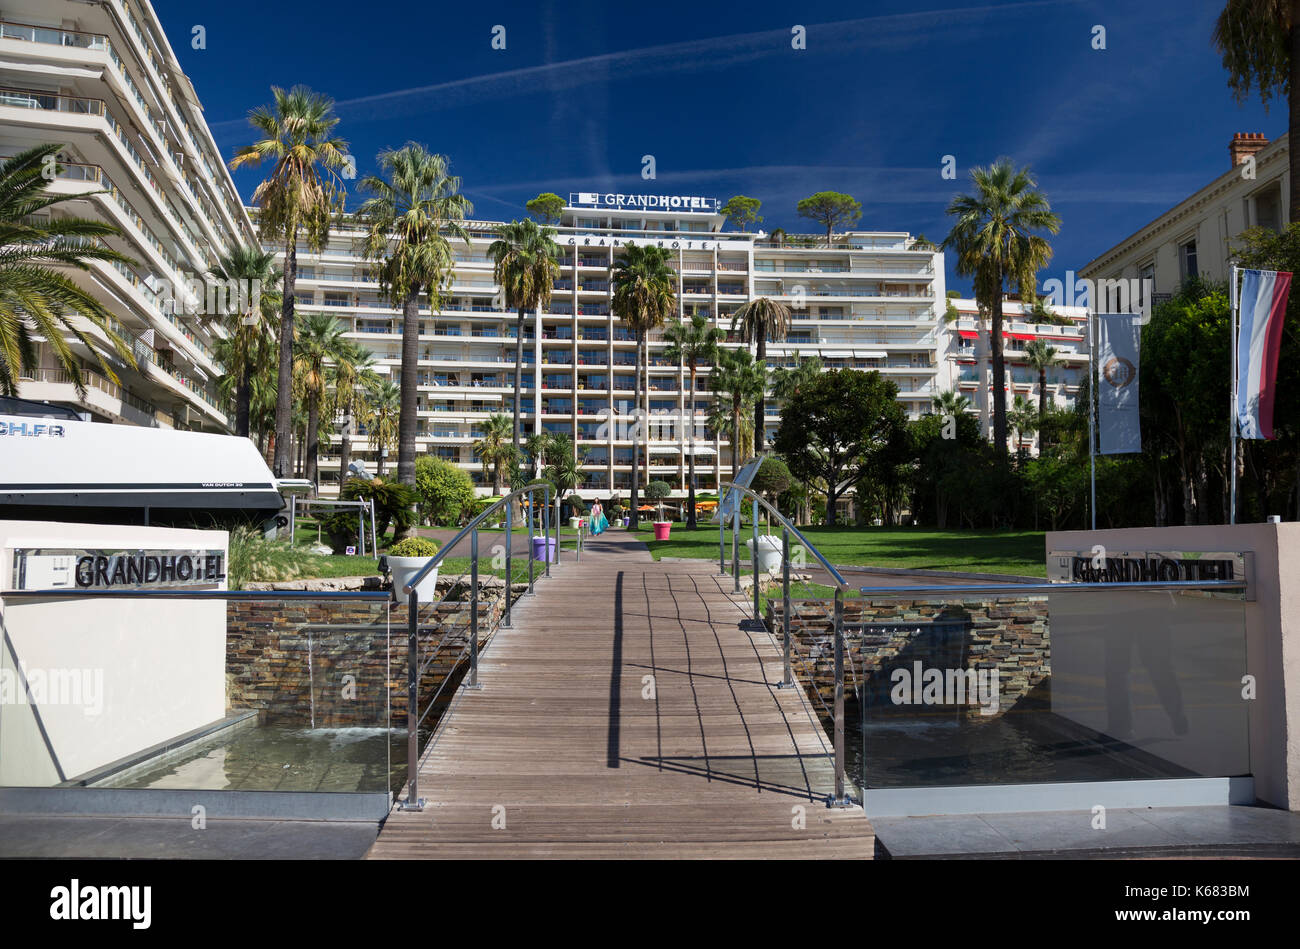 Le Grand Hotel, Boulevard de la Croisette, Cannes, France Stock Photo